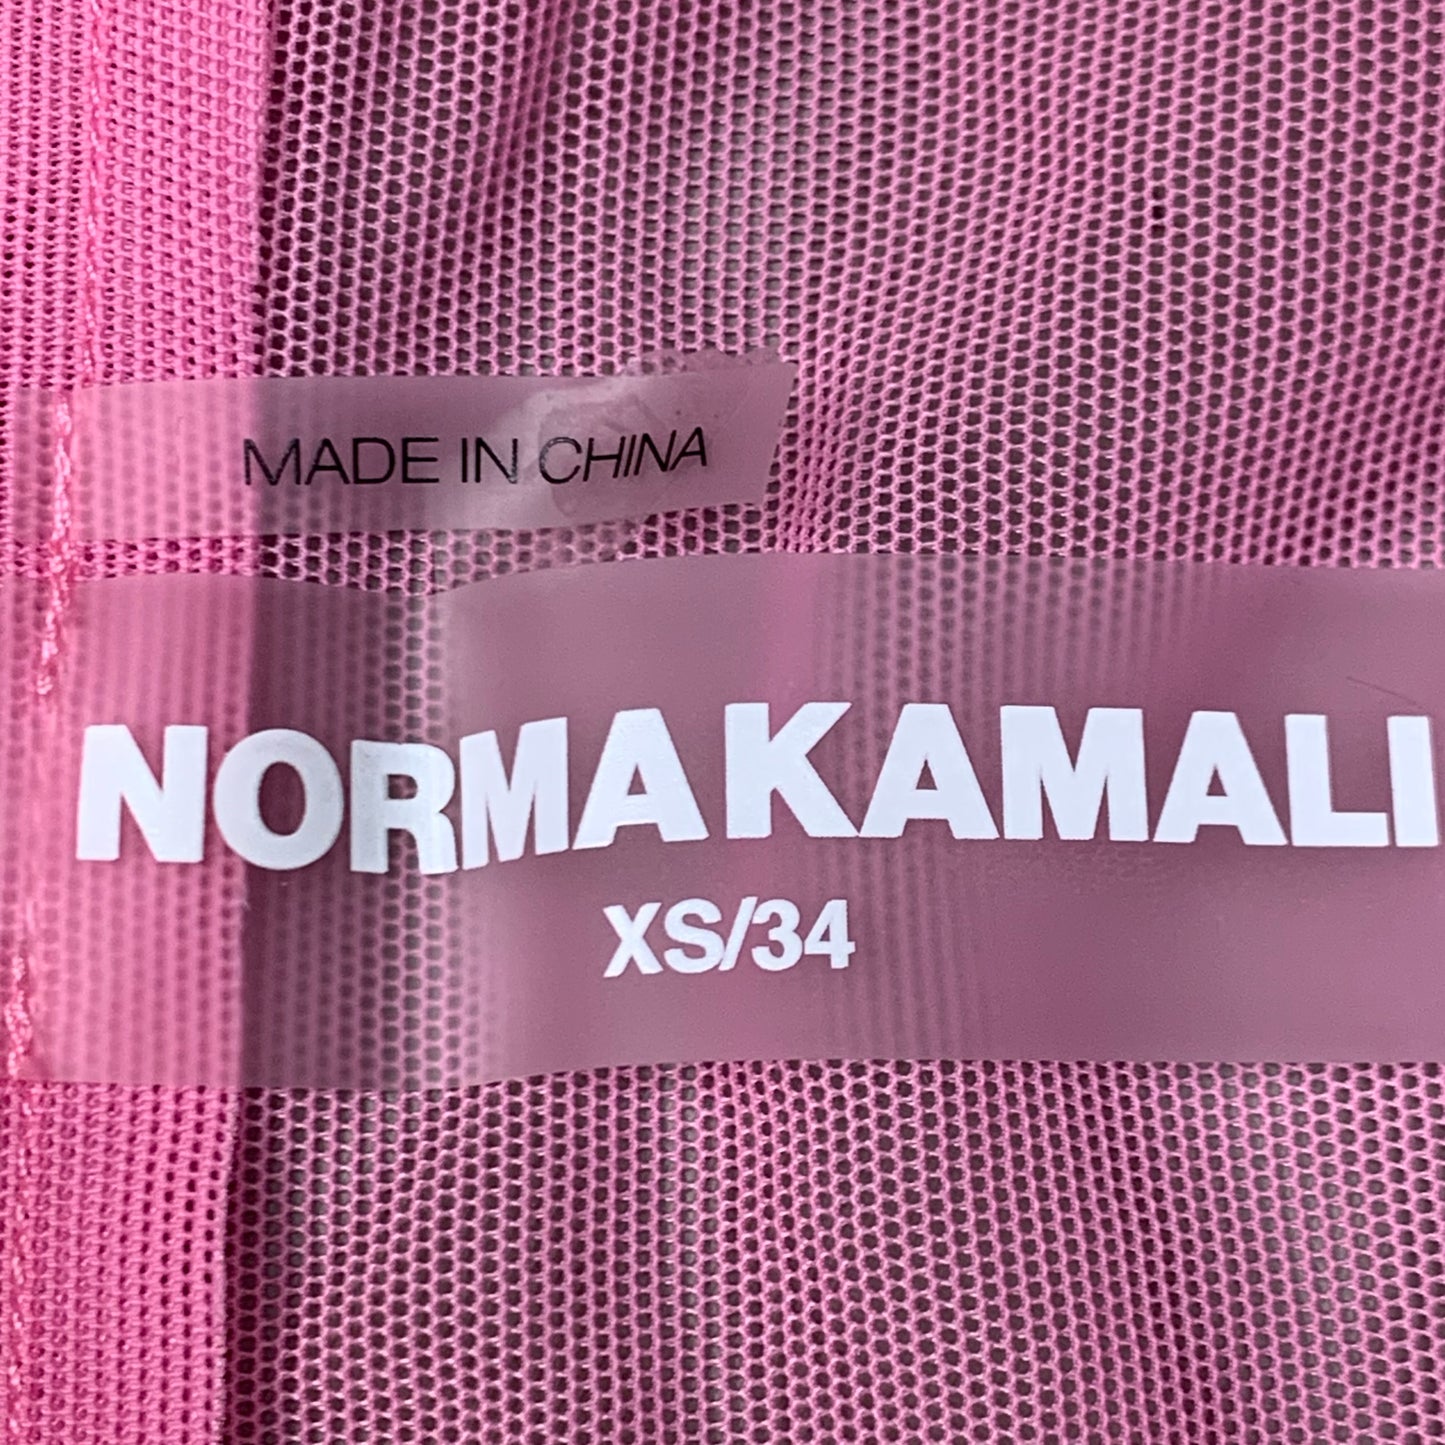 NORMA KAMALI Nk Shirt W/ Faux Pockets SZ XS/34 Candy Pink ST1236MS963966 (New)